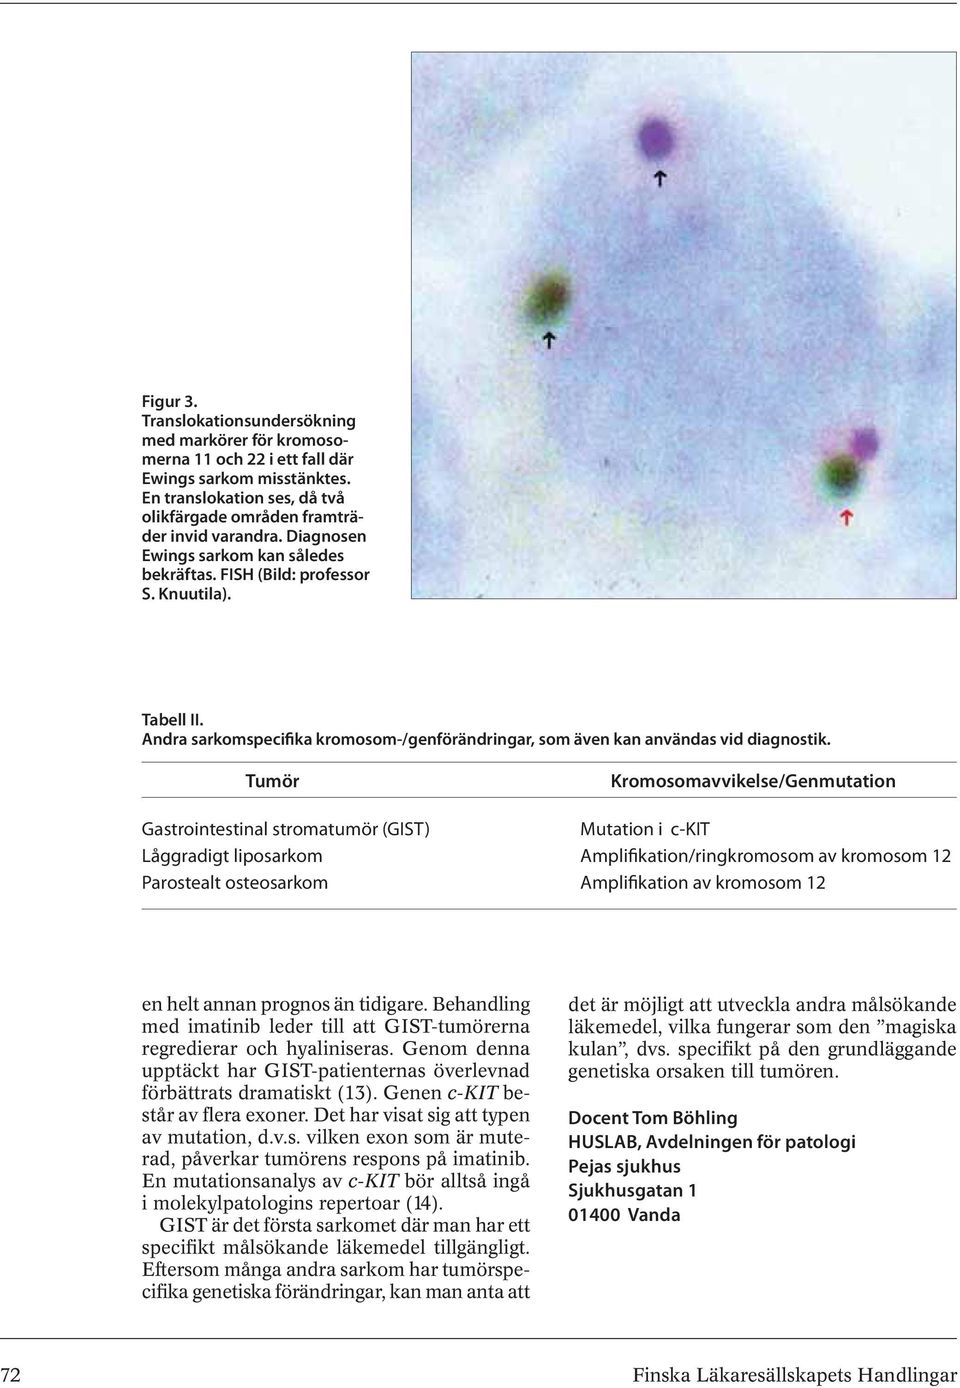 Tumör Kromosomavvikelse/Genmutation Gastrointestinal stromatumör (GIST) Mutation i c-kit Låggradigt liposarkom Amplifikation/ringkromosom av kromosom 12 Parostealt osteosarkom Amplifikation av